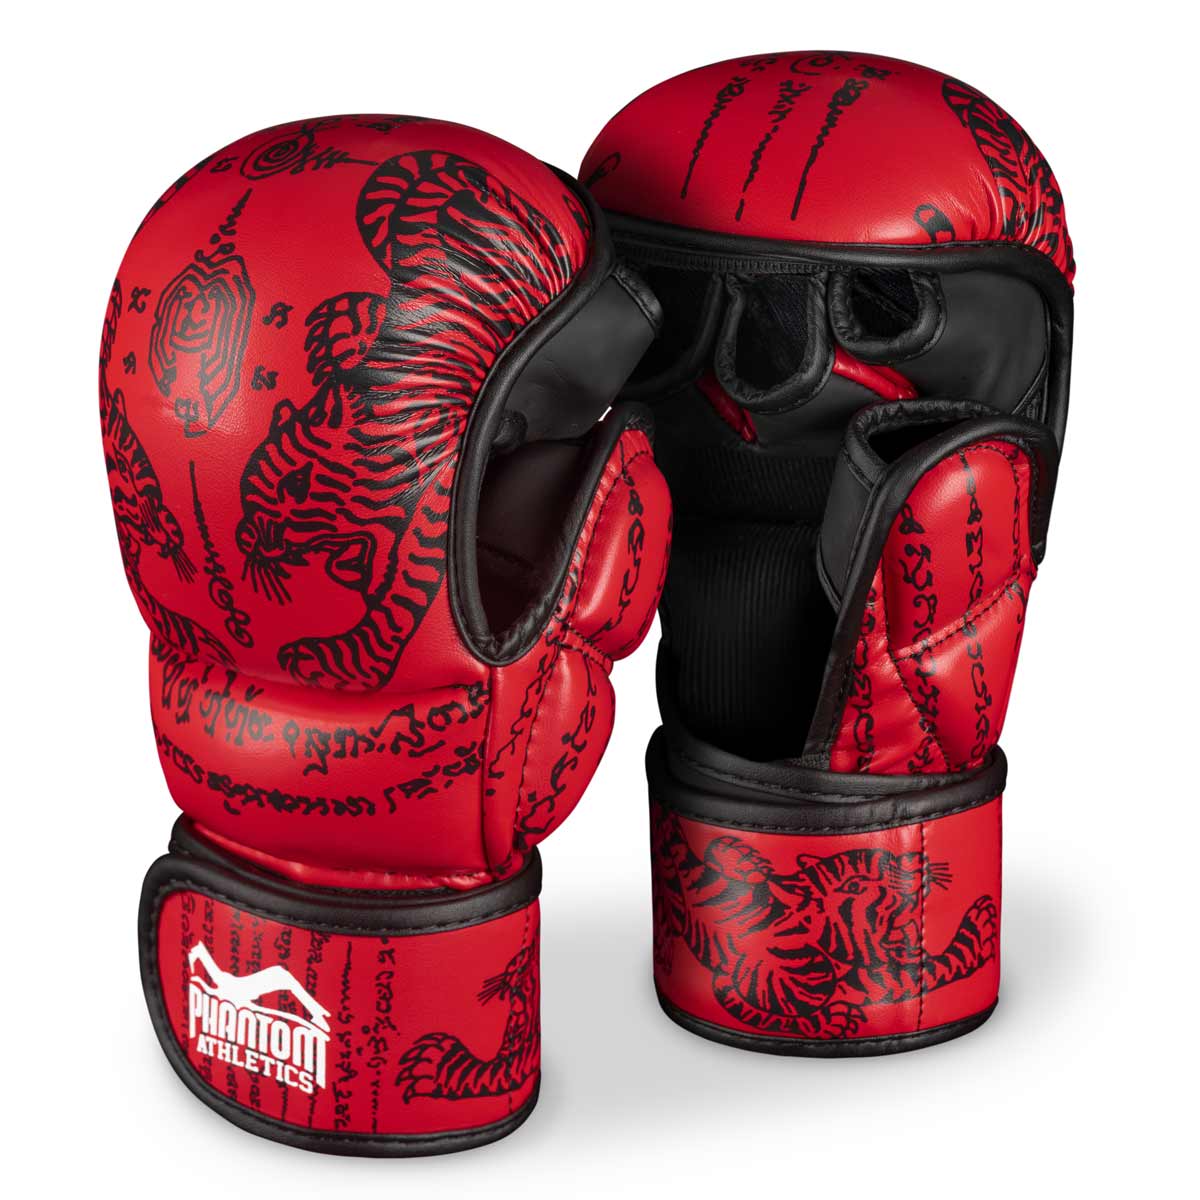 Phantom Muay Thai handsker til thaiboksning og MMA sparring, konkurrence og træning. I det traditionelle Sak Yant design og farven rød.